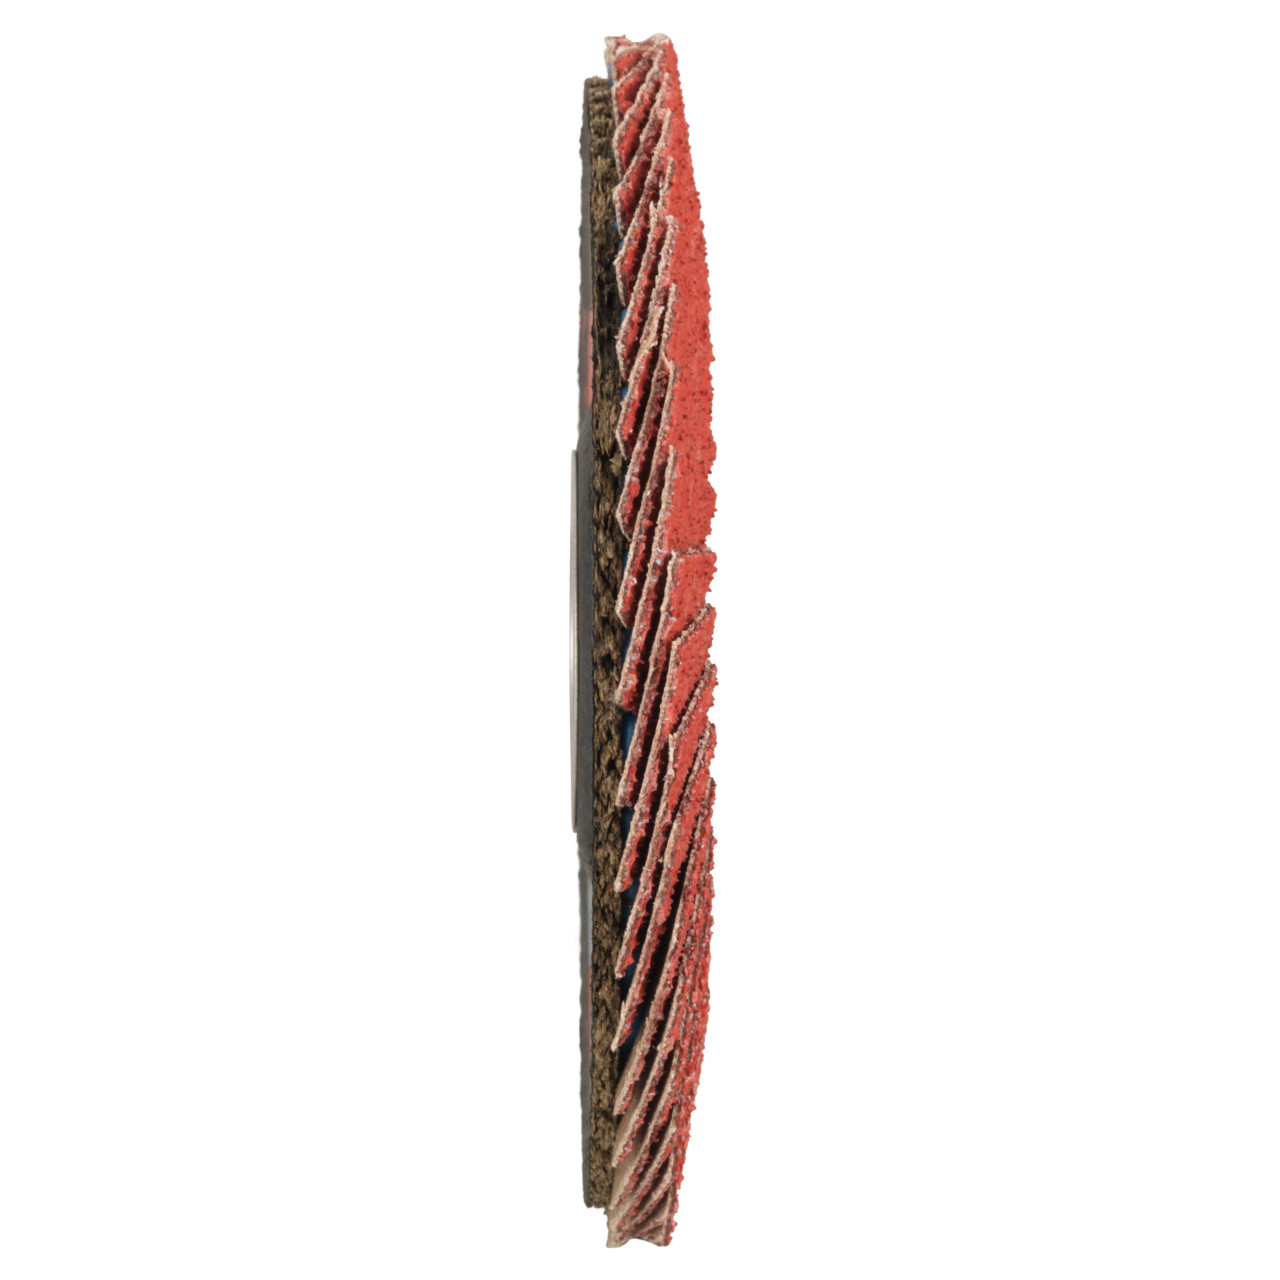 TYROLIT Fächerscheibe DxH 178x22,23 CERAMIC für Edelstahl, P60, Form: 28A - gerade Ausführung (Glasfaserträgerkörperausführung), Art. 34166860